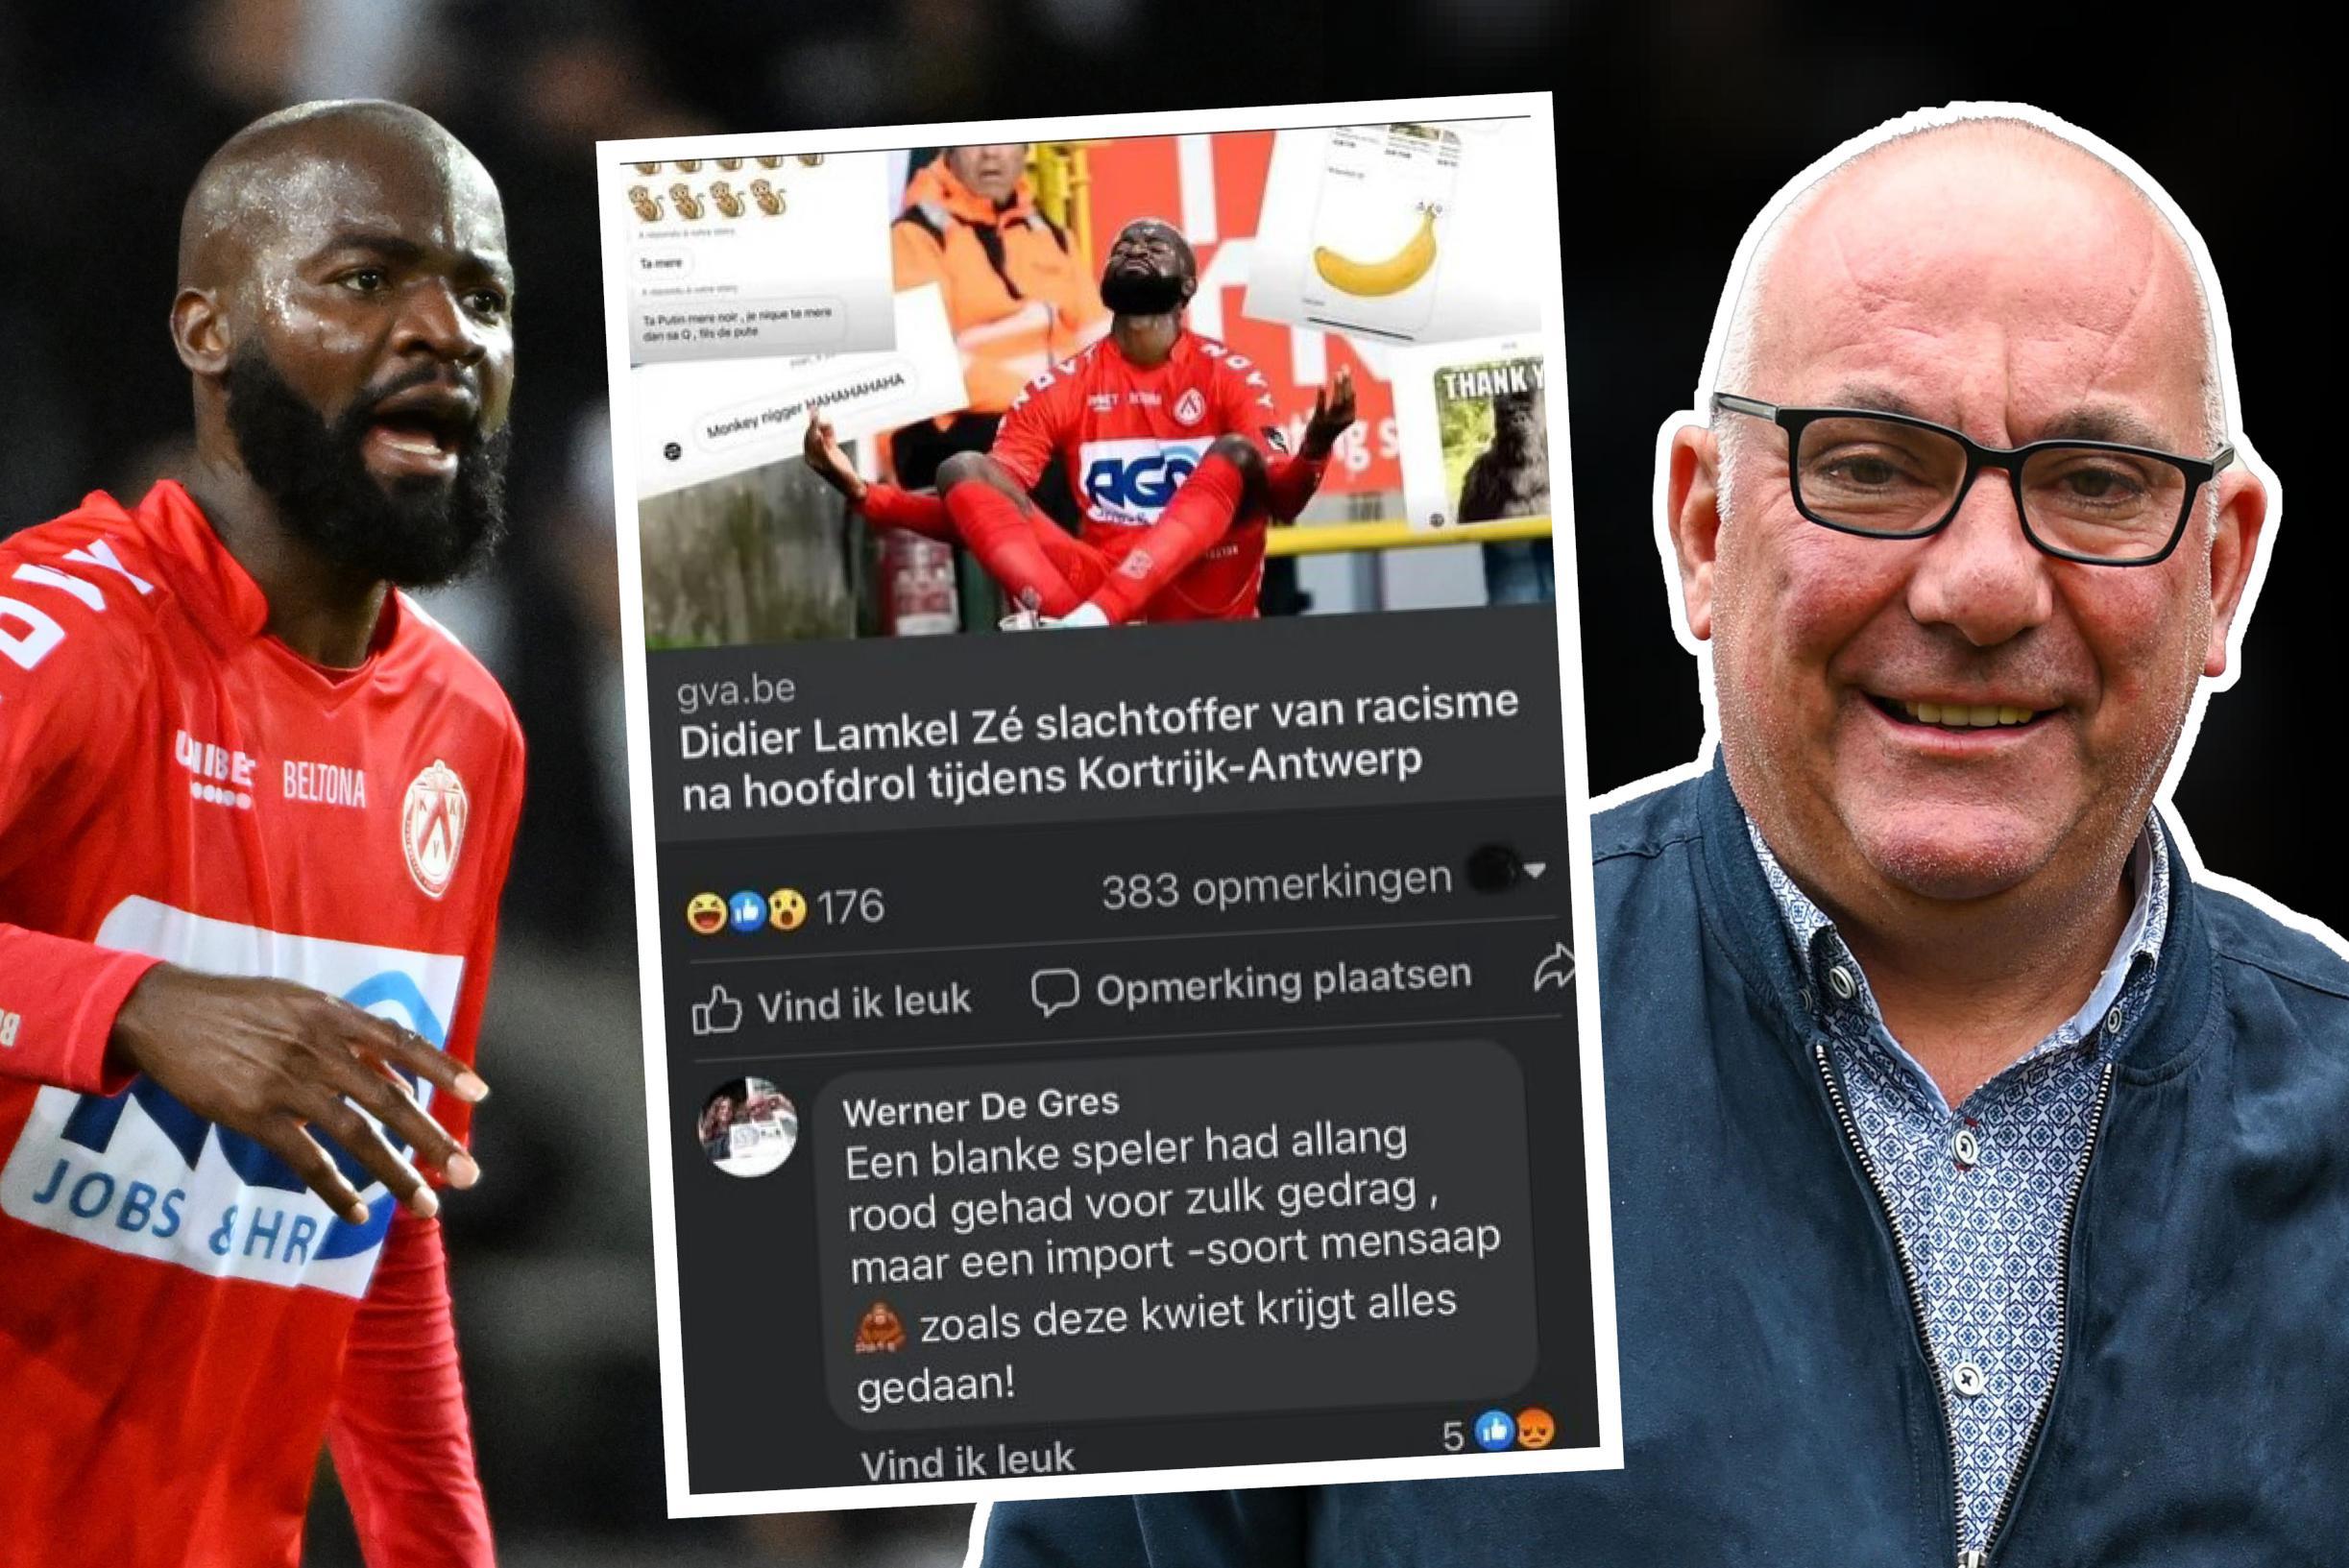 Wilrijkse Vlaams Belanger op non-actief gezet nadat hij Lamkel Zé ‘mensaap’ noemt: “Ik heb er spijt van, ik ben geen racist”